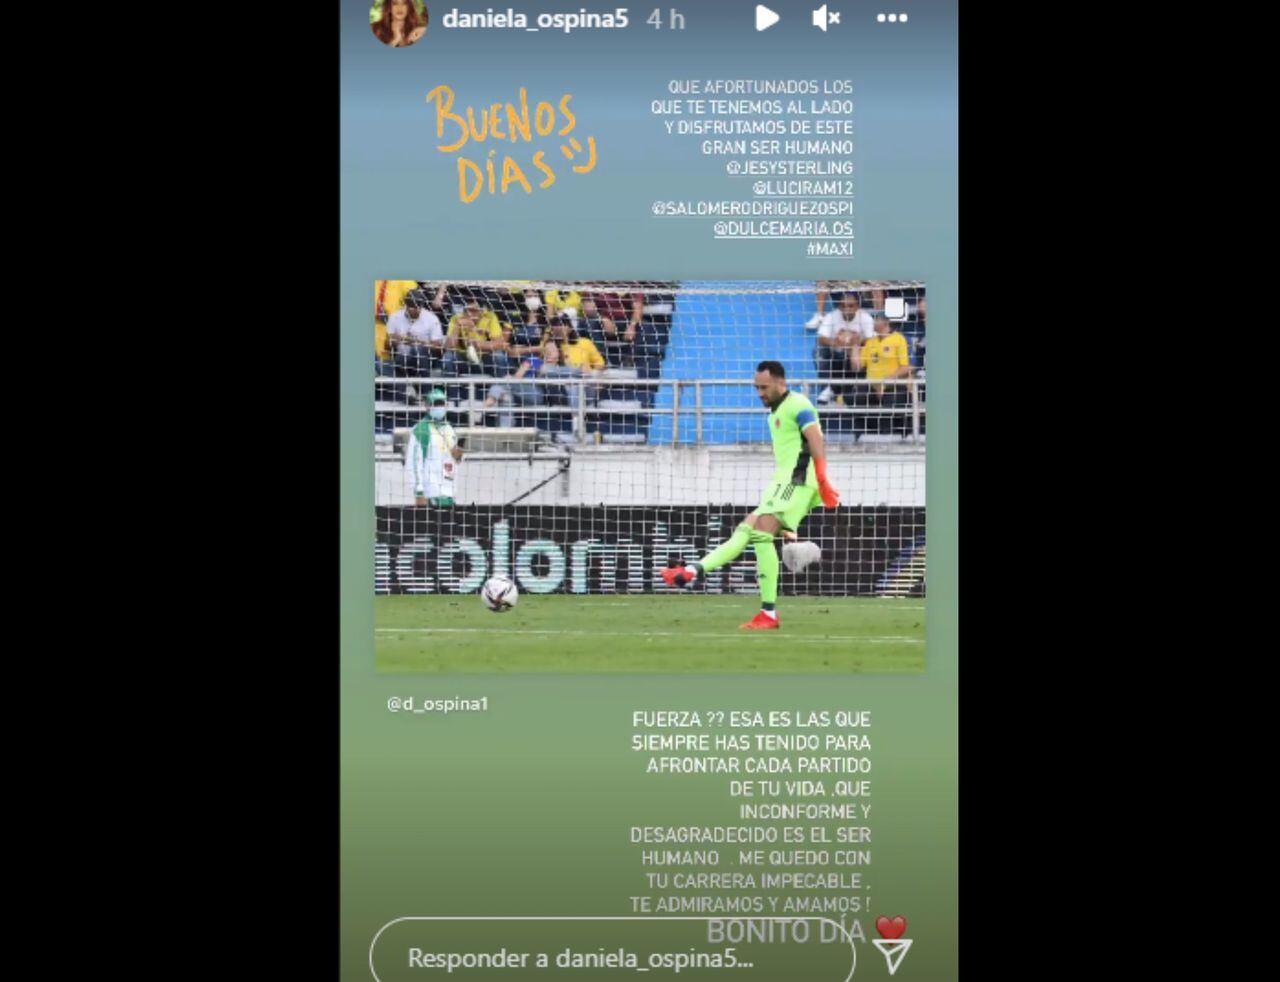 Historia en Instagram de Daniela Ospina sobre David Ospina